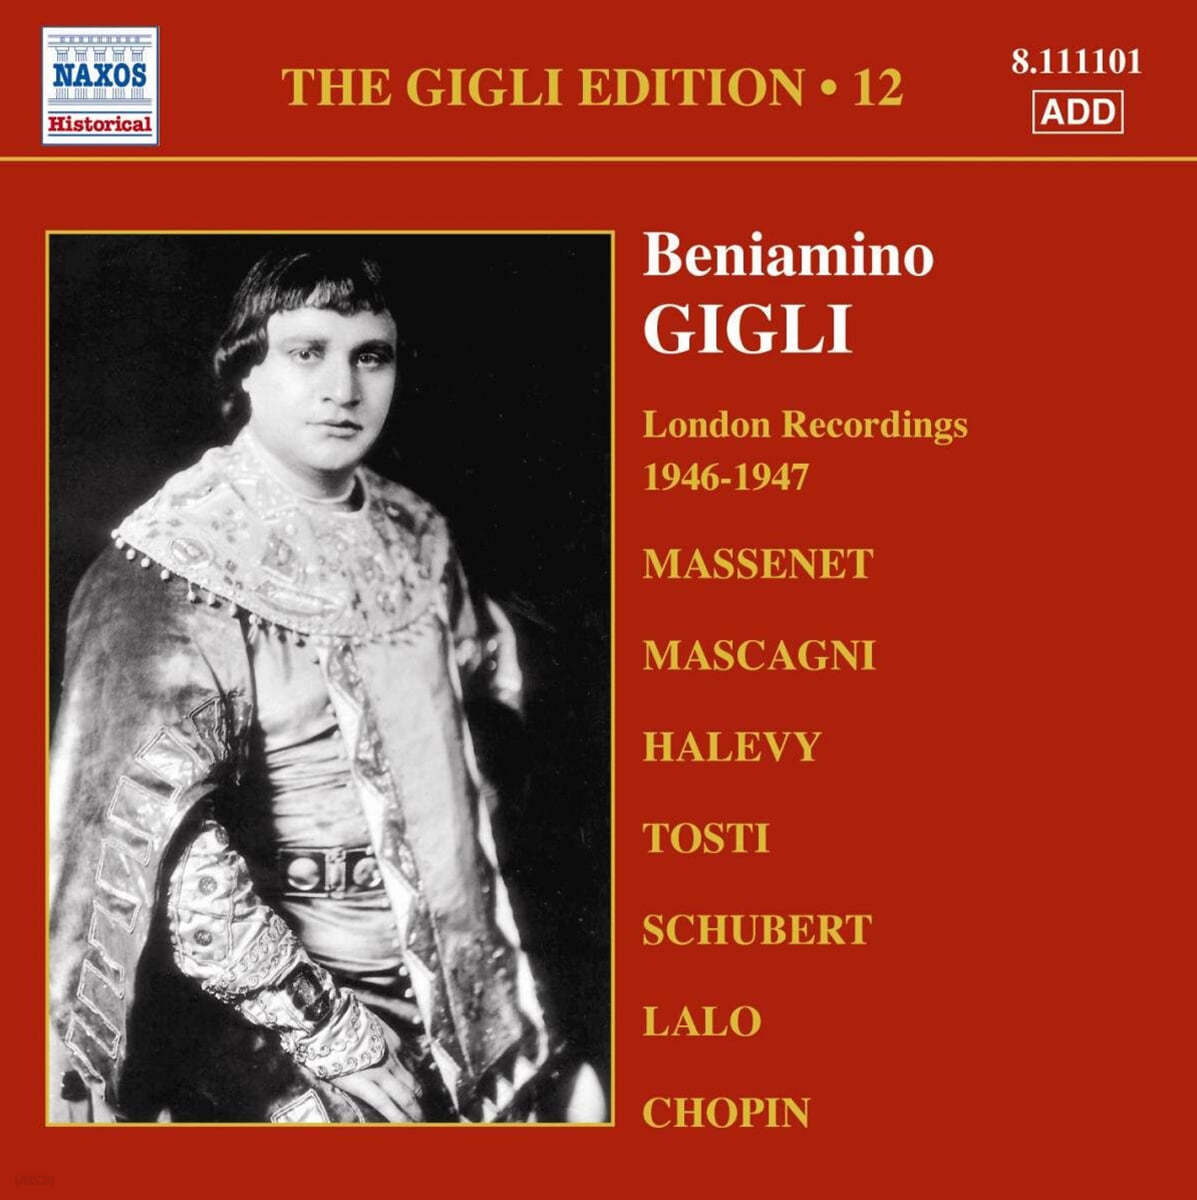 테너 베니아미노 질리 런던 녹음 12집 (Beniamino Gigli - London Recordings Edition Vol. 12) 